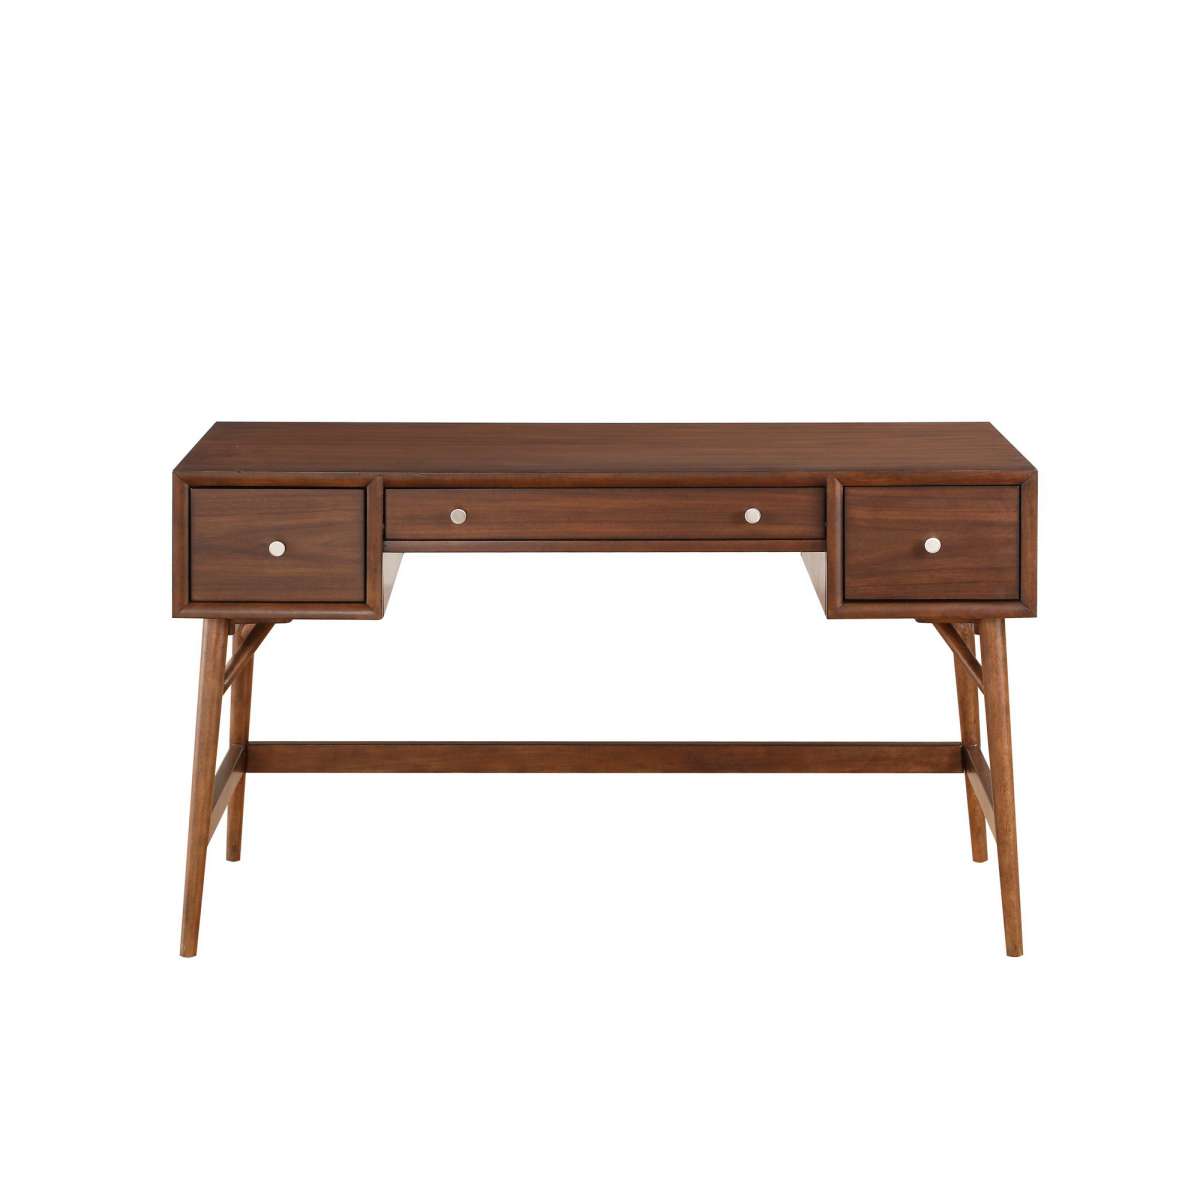 3 Drawer Wooden Writing Desk With Splayed Legs, Walnut Brown By Benzara | Desks |  Modishstore  - 4